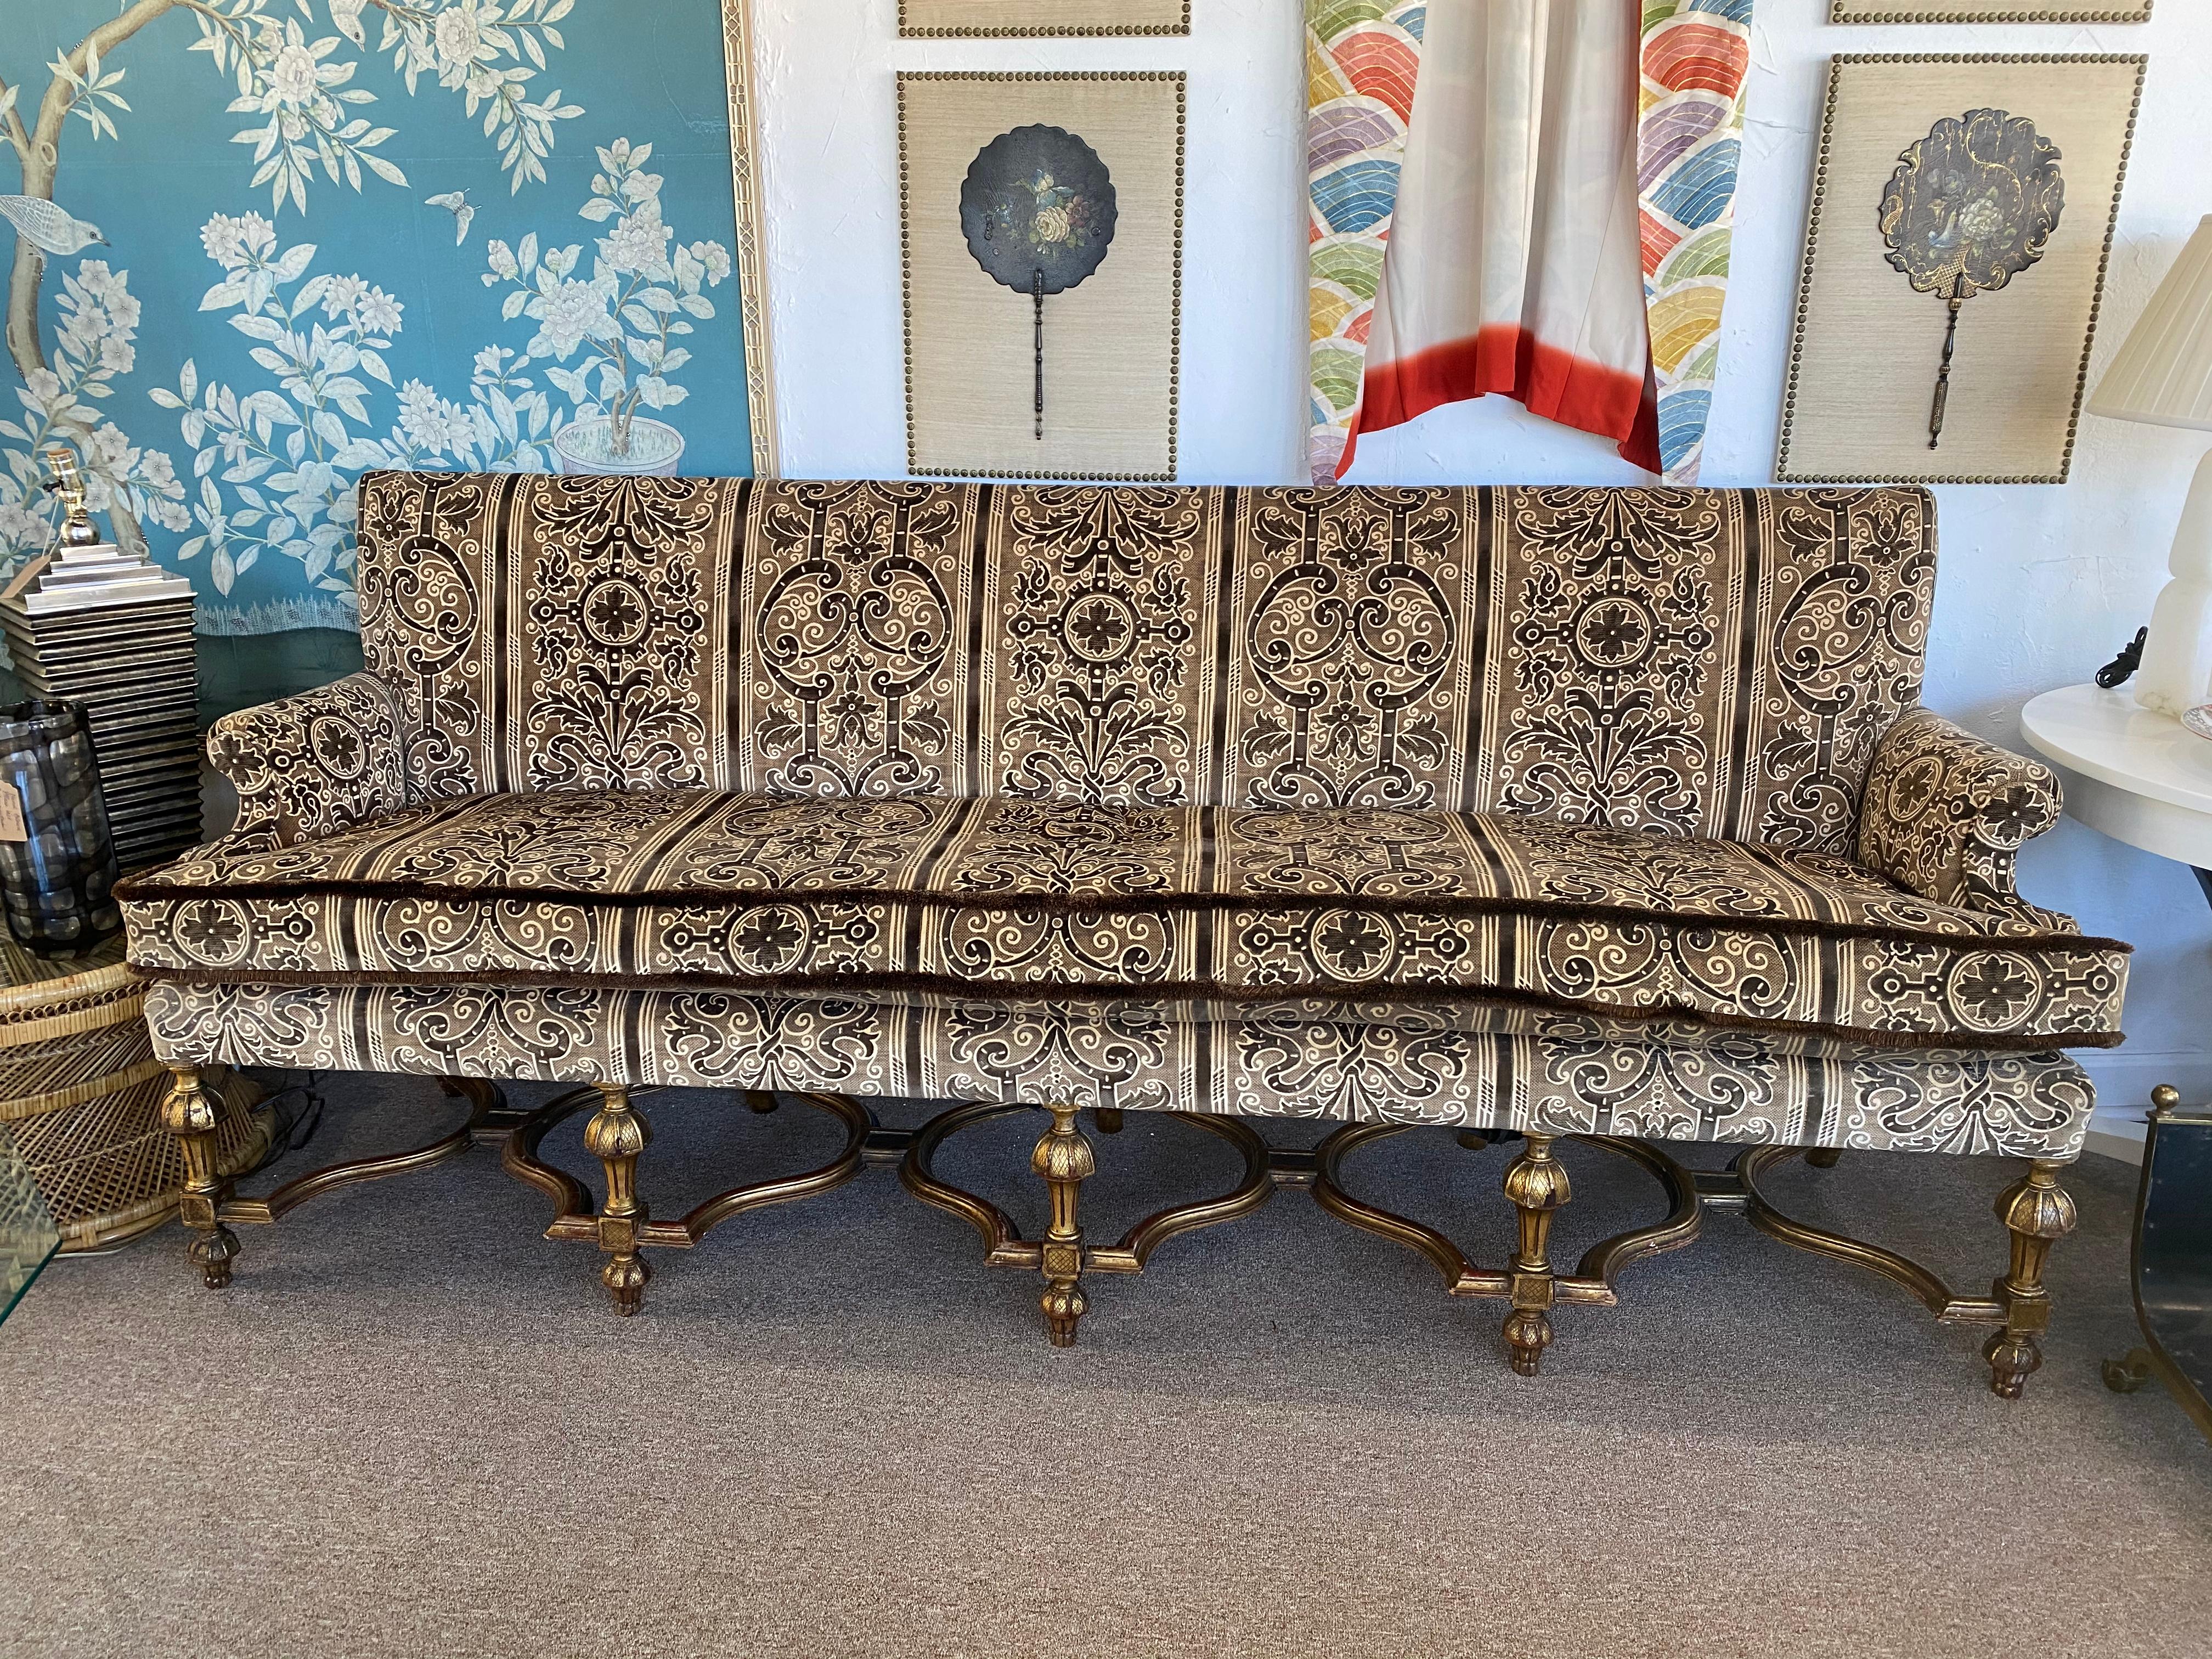 Dieses große Sofa ist mit Bergamo Corded Velvet bezogen und mit Bürstenbesatz versehen. Die vergoldeten Beine im viktorianischen/gotischen Stil sind atemberaubend. Toller Condit!